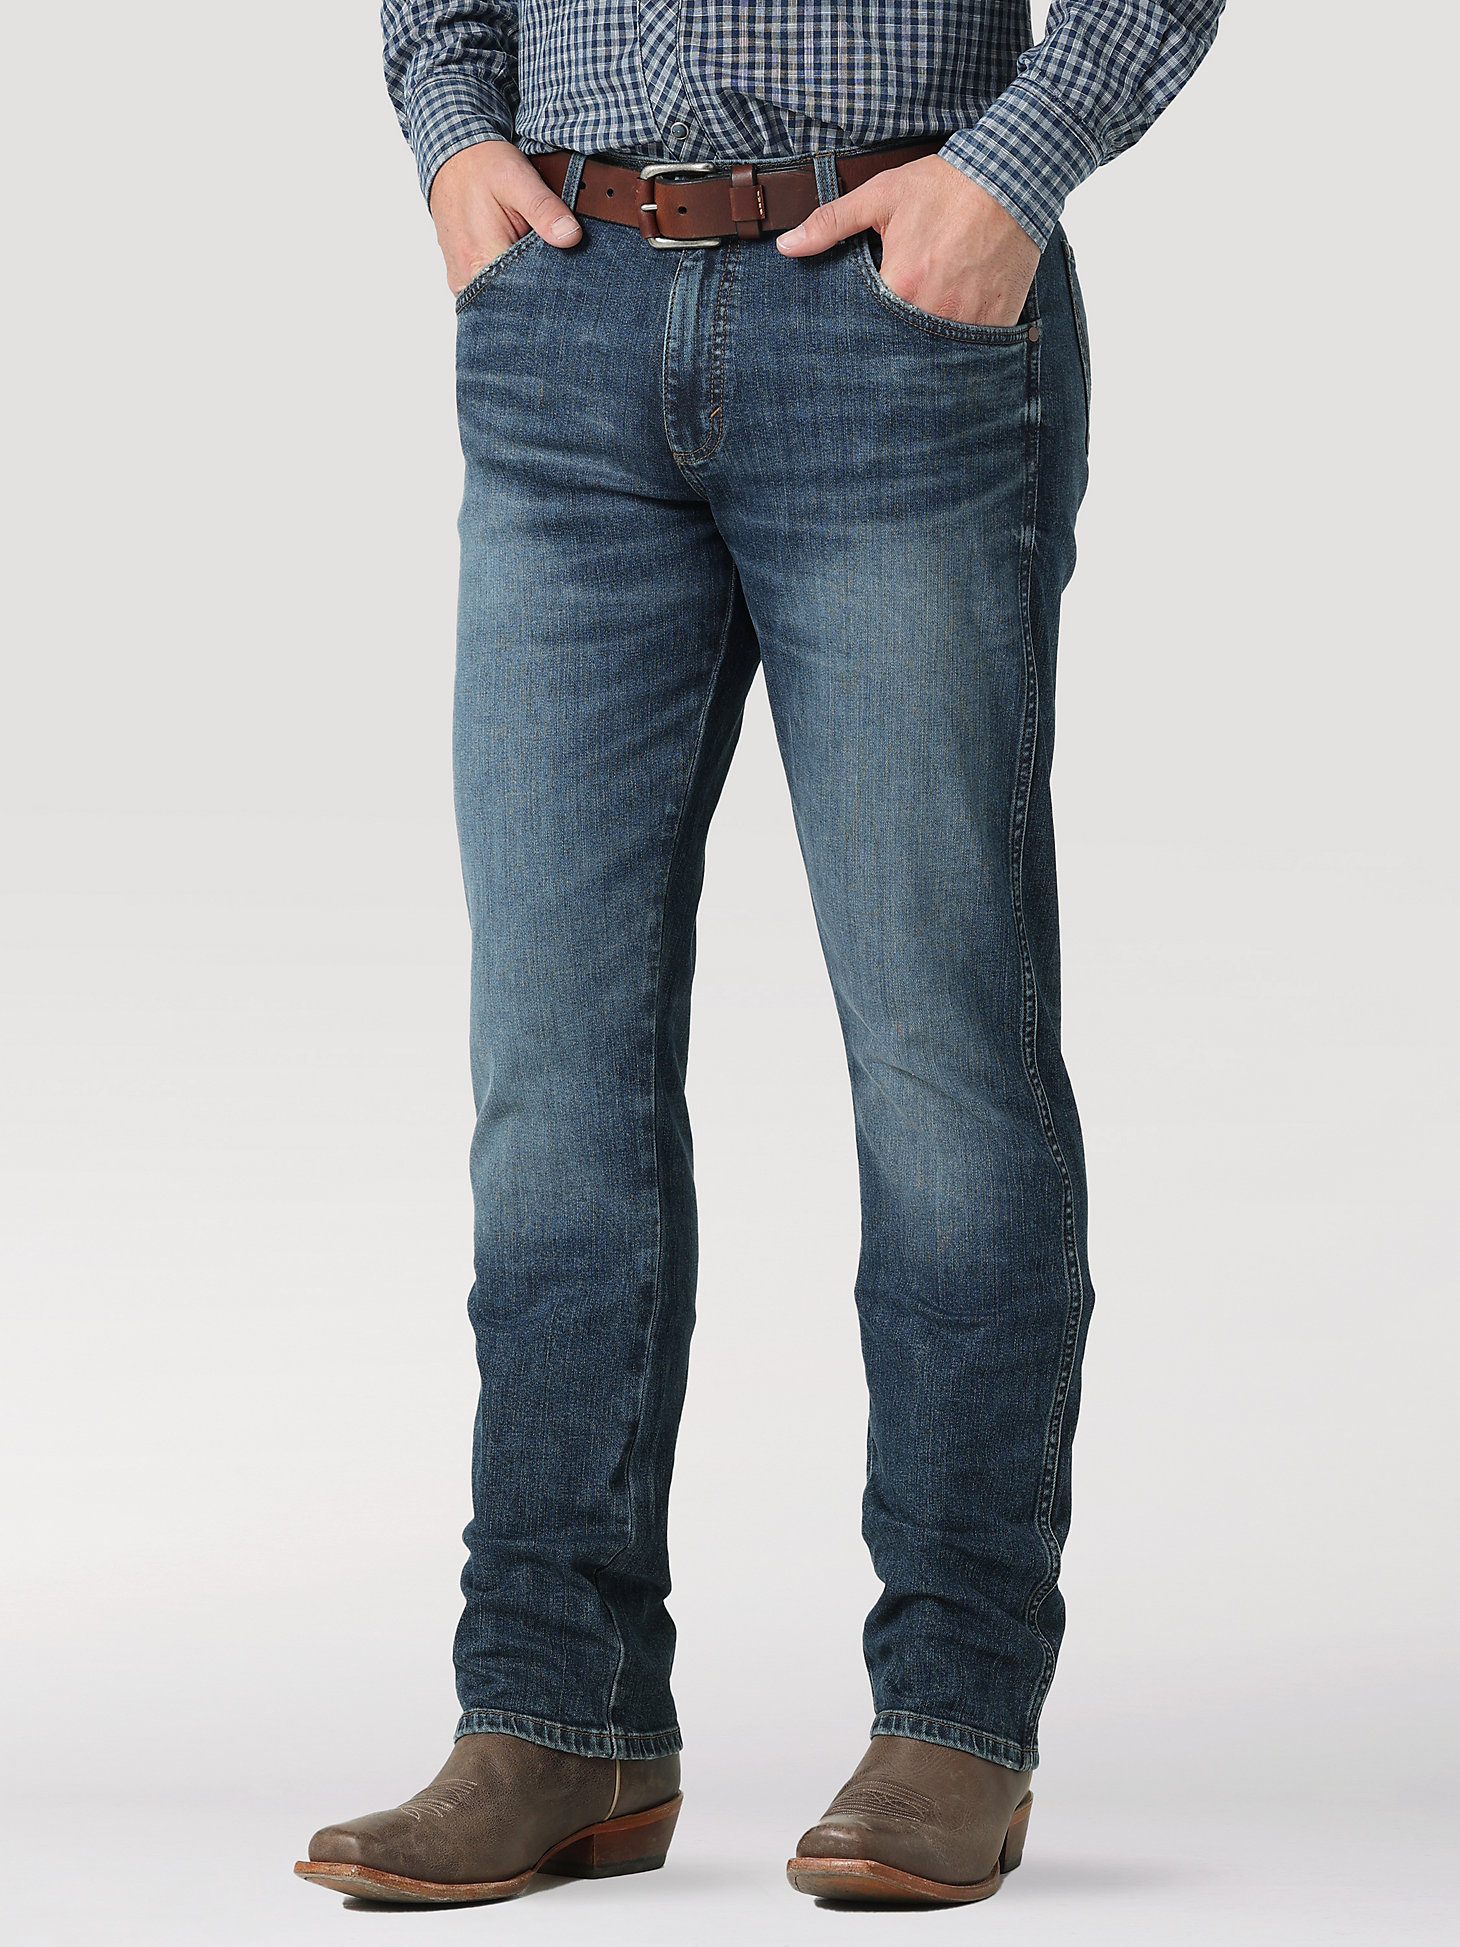 The Wrangler Retro® Premium Jean: Men's Slim Straight in Enerjean alternative view 1